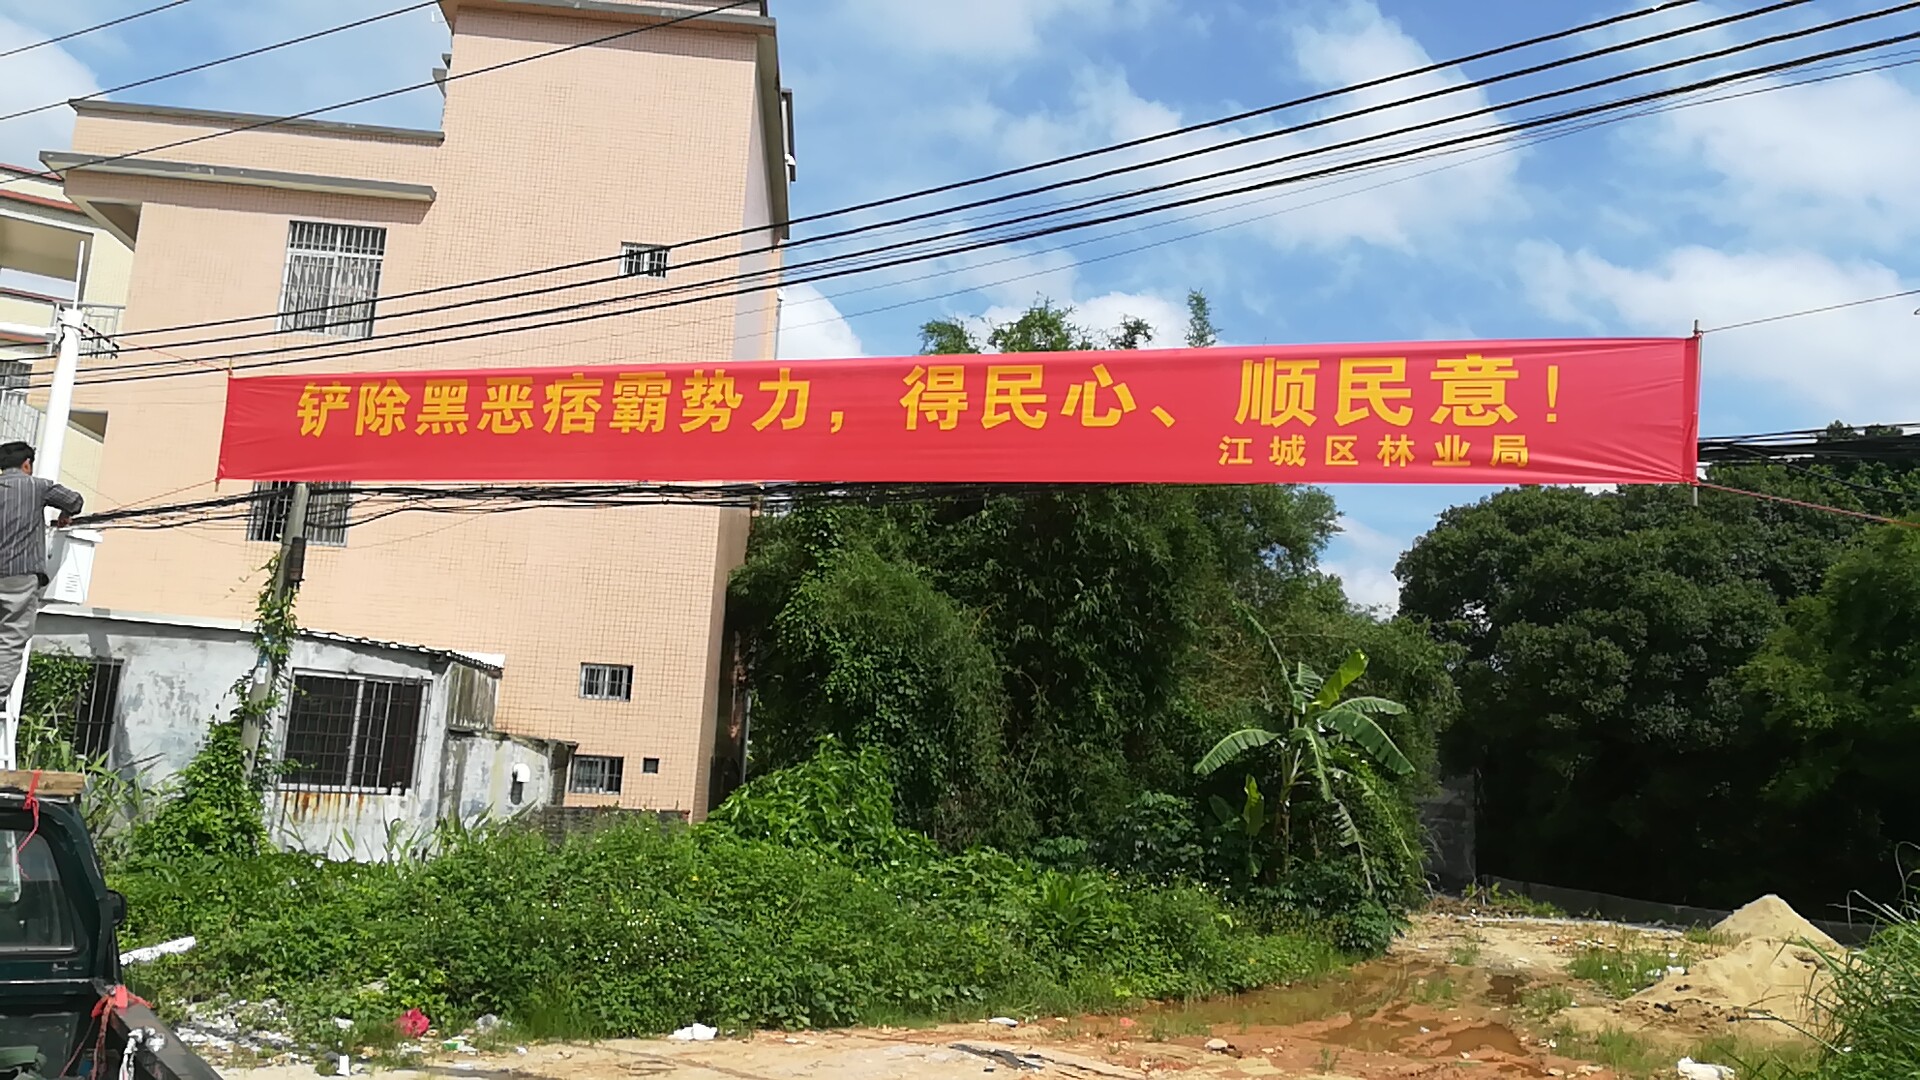 江城区林业局联合阳江市公安局森林分局开展扫黑除恶专项斗争 宣传活动